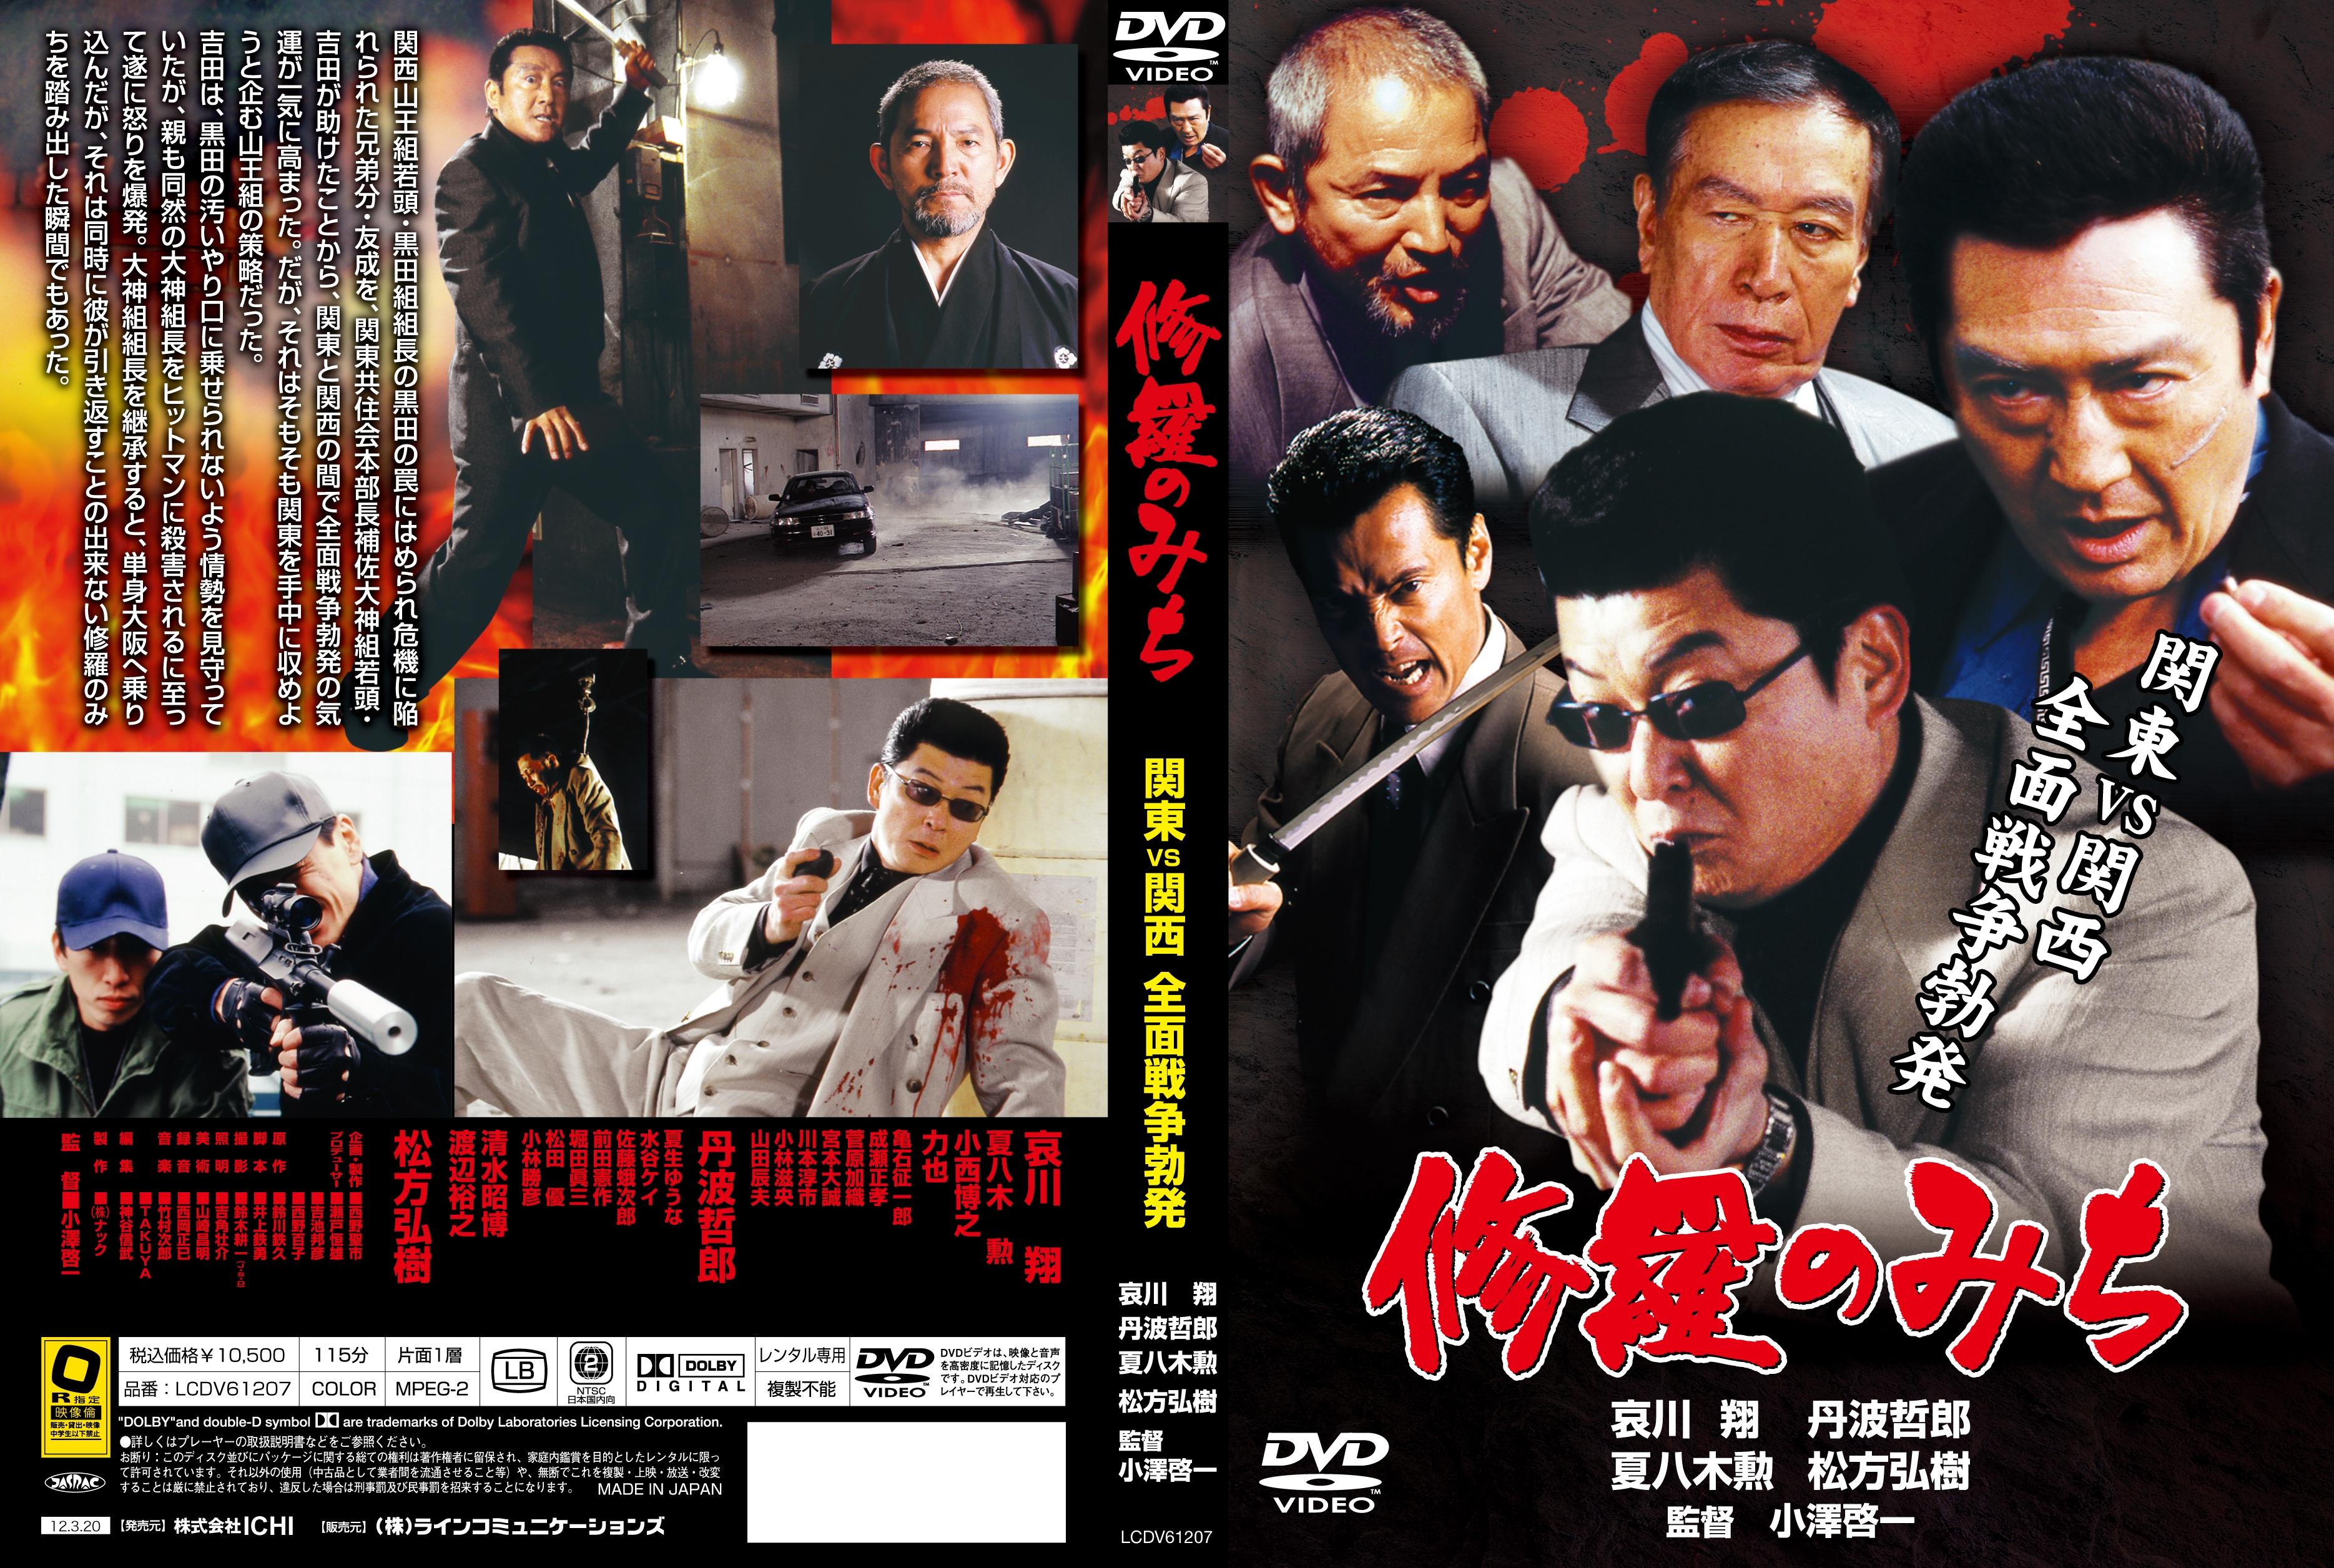 【日本買い】修羅のみち DVD-BOX1 6枚組 洋画・外国映画